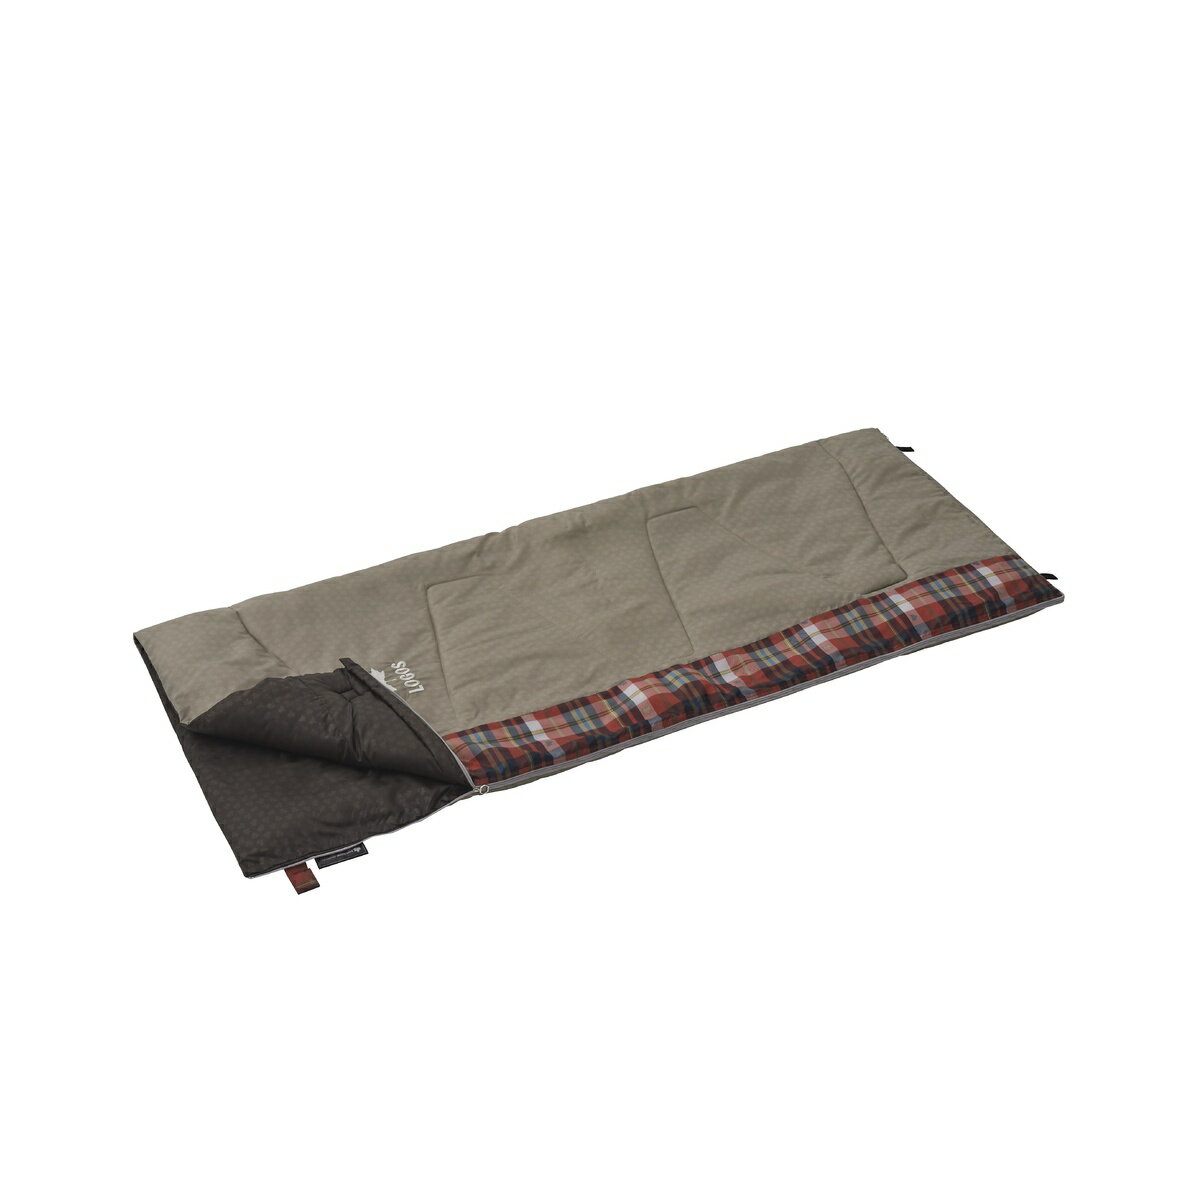 ロゴス (LOGOS) マルアライ スランバーシュラフ2 キャンプ用品 寝袋 スリーピングバッグ 封筒型 72602010